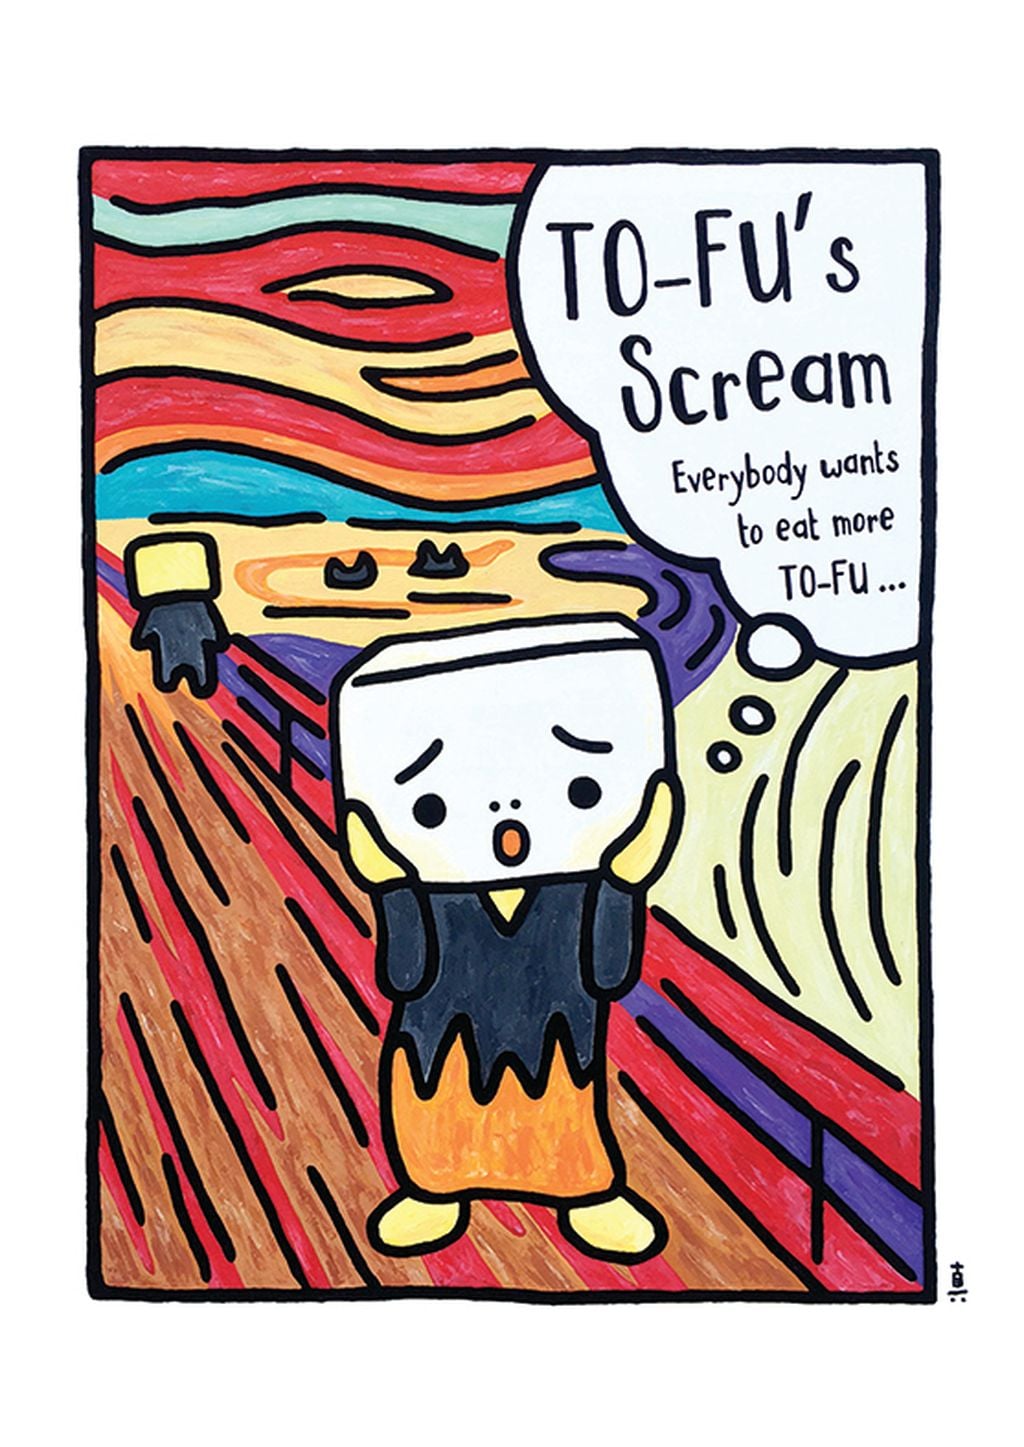 北井真一郎創作了豆腐家族角色，為是次展覽特別創作了惡搞世界名畫系列，其中之一是《 To-Fu's Scream 》。